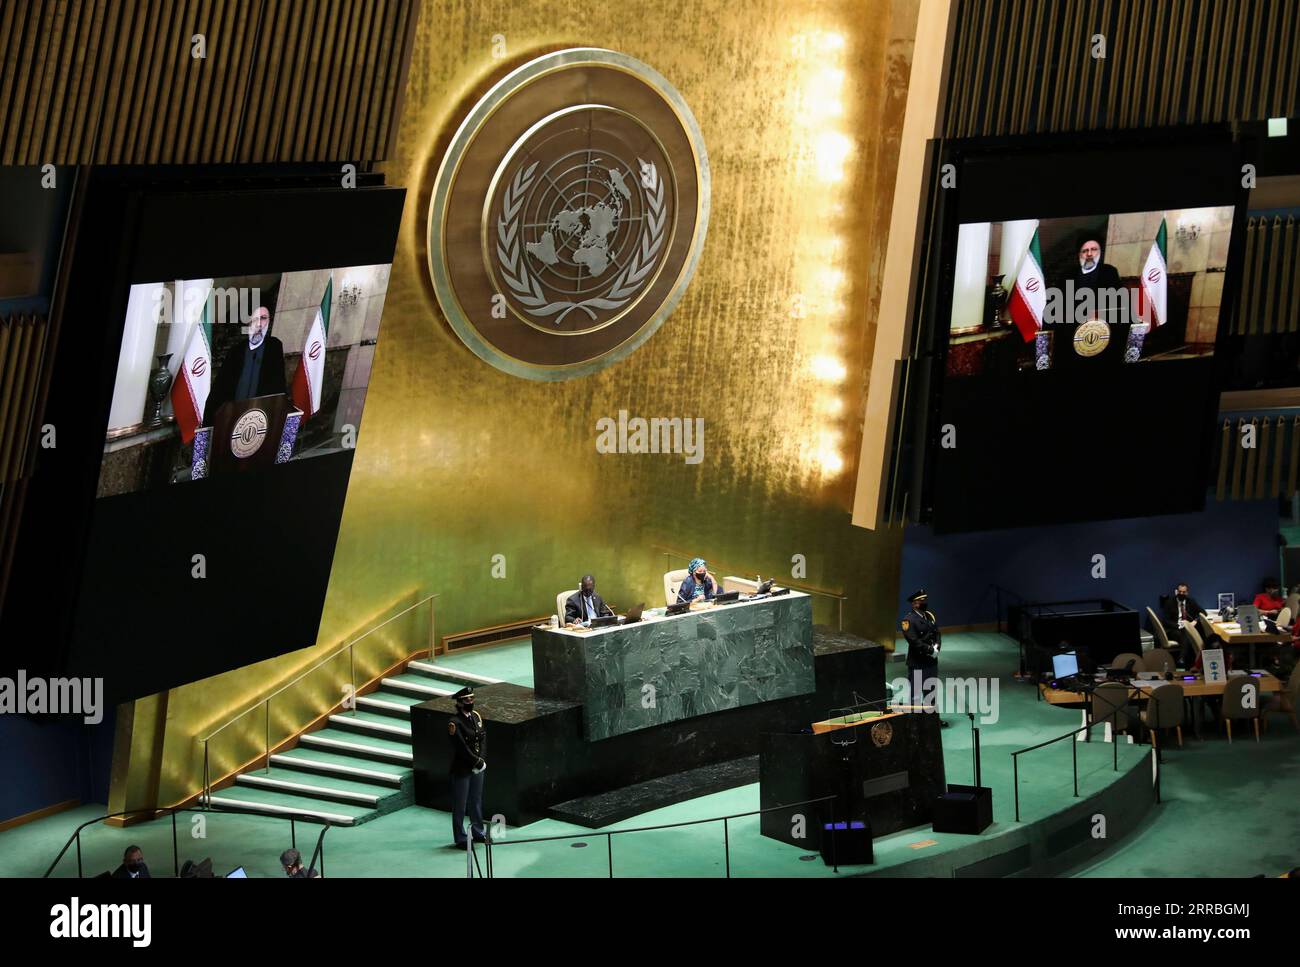 210921 -- NATIONS UNIES, 21 septembre 2021 -- le président iranien Ebrahim Raisi sur les écrans parle à distance lors du débat général de la 76e session de l'Assemblée générale des Nations Unies au siège de l'ONU à New York, le 21 septembre 2021. Raisi a déclaré mardi que son pays ne fait pas confiance aux promesses faites par le gouvernement américain, tout en notant qu’il cherche une interaction efficace avec tous les pays du monde. ONU-ASSEMBLÉE GÉNÉRALE-DÉBAT GÉNÉRAL WangxYing PUBLICATIONxNOTxINxCHN Banque D'Images